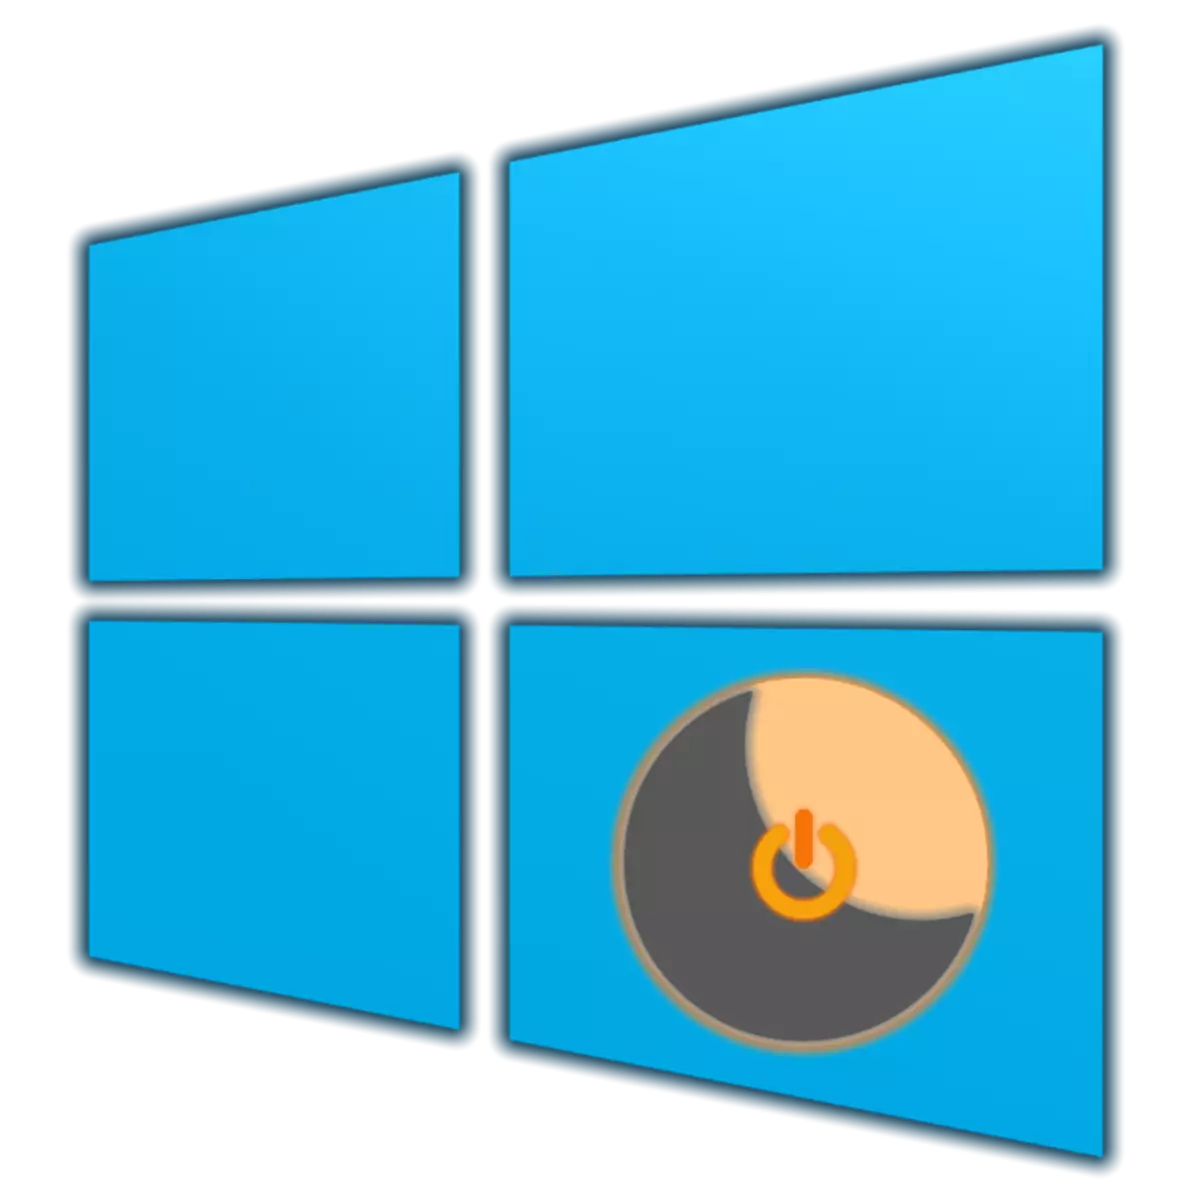 Windows 10-da kavzatsiyani qanday yoqish kerak